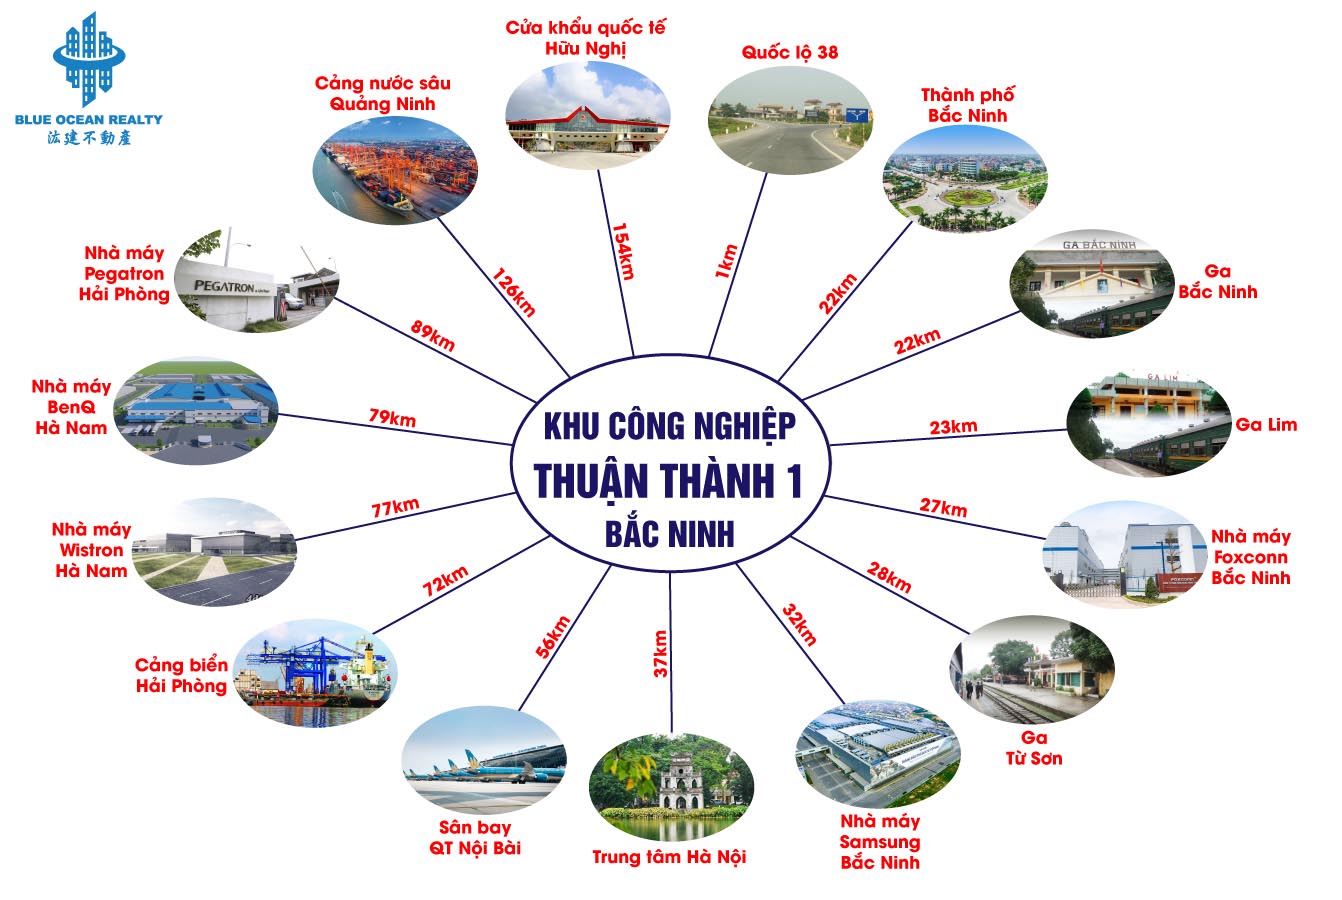 Khu công nghiệp Thuận Thành 1 - Bắc Ninh